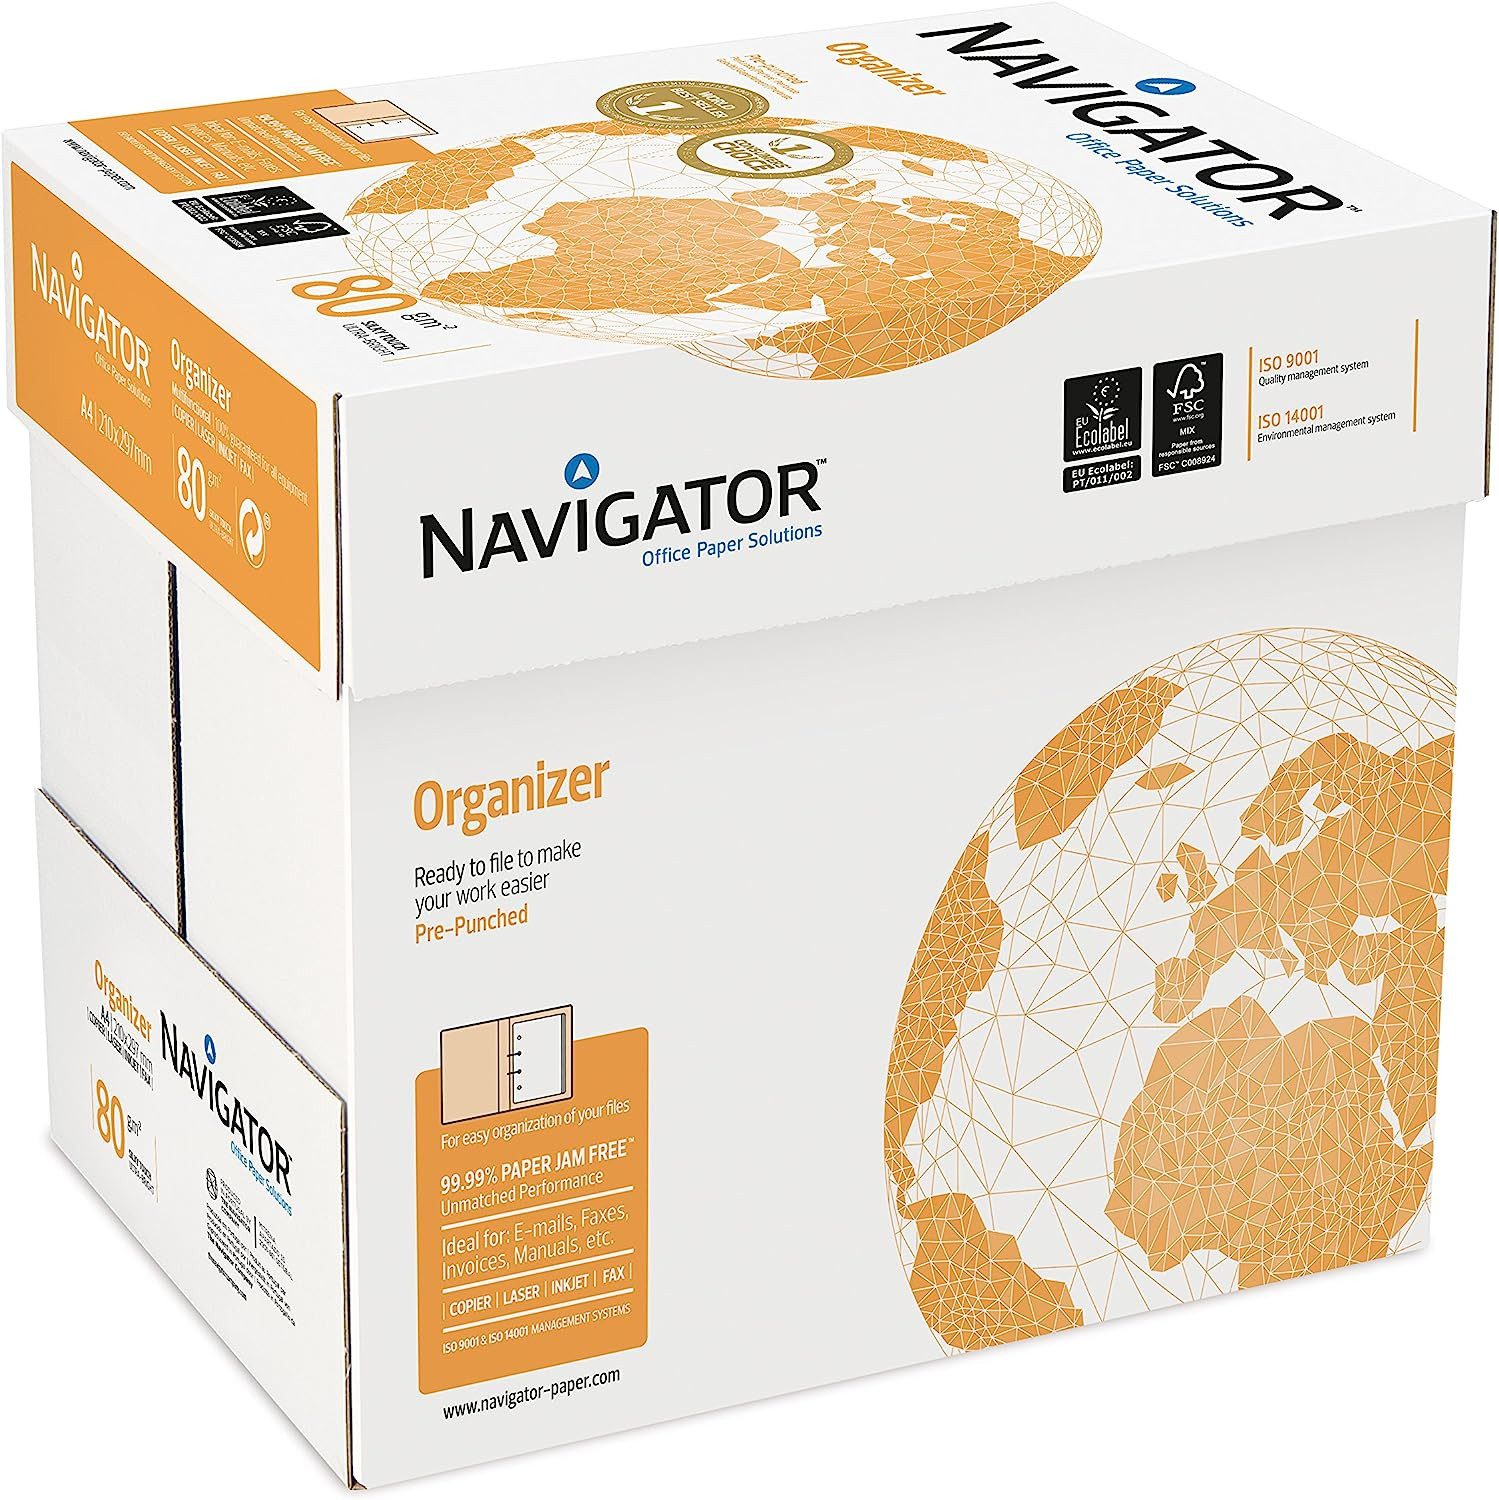 NAVIGATOR Drucker- und Kopierpapier 2500 Blatt Navigator Organizer 80g/m² DIN-A4 - 2-fach gelocht